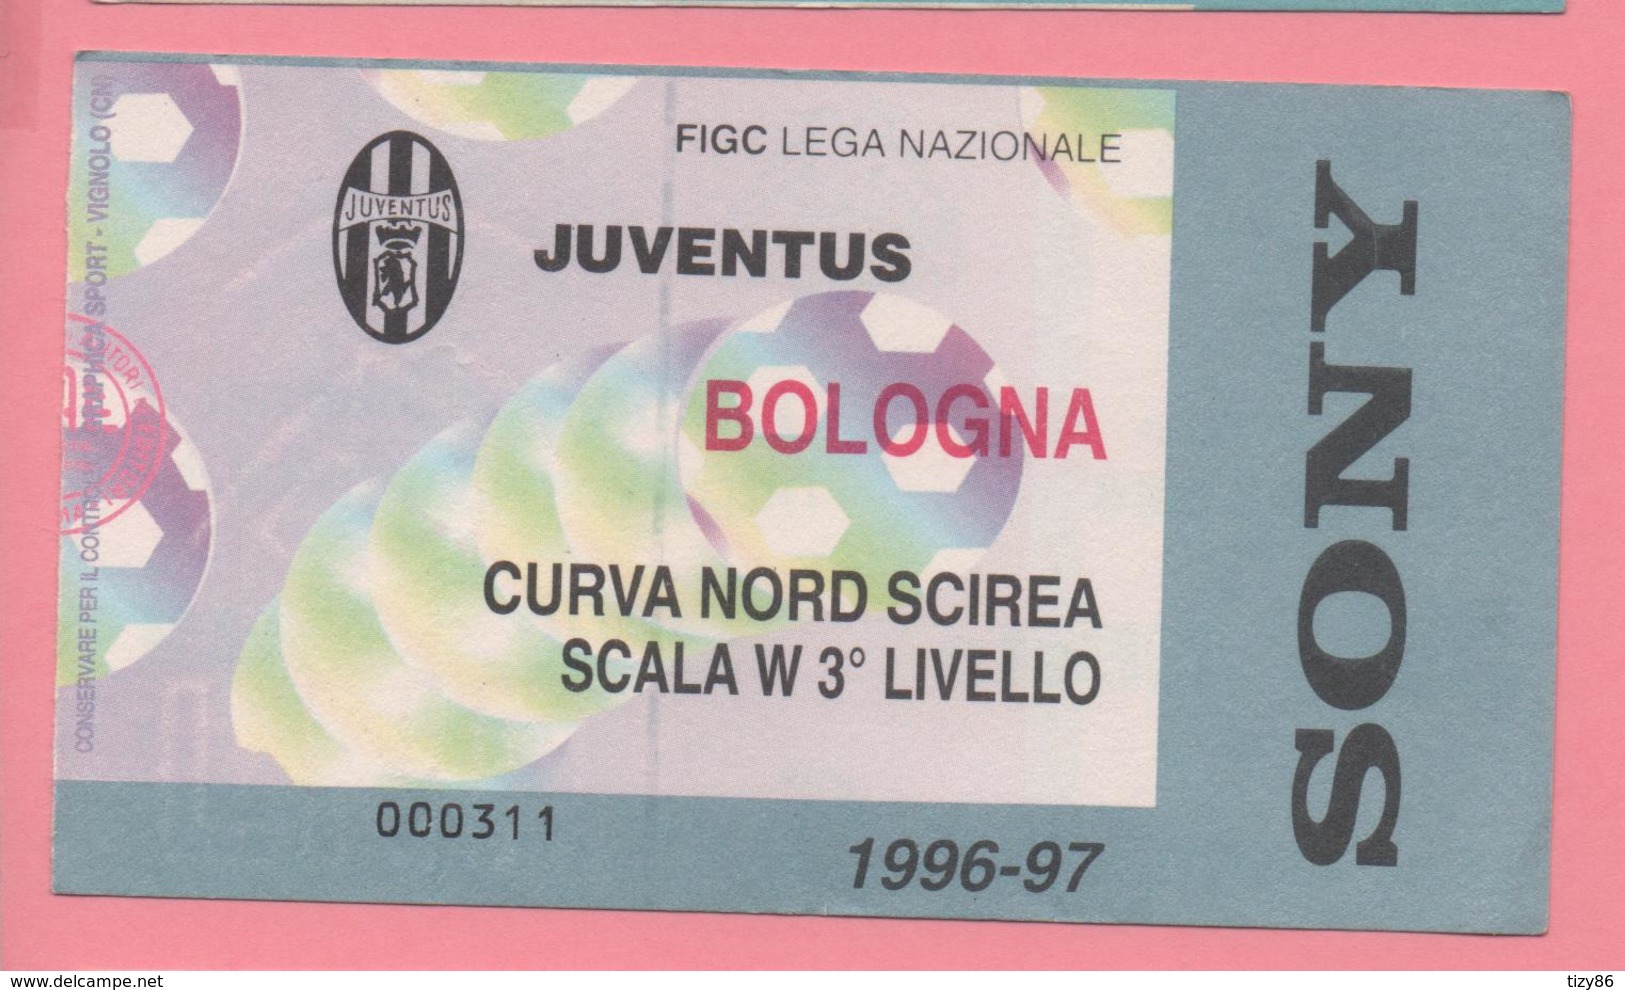 Biglietto D'ingresso Stadio Juventus Bologna 1996/97 - Tickets - Vouchers